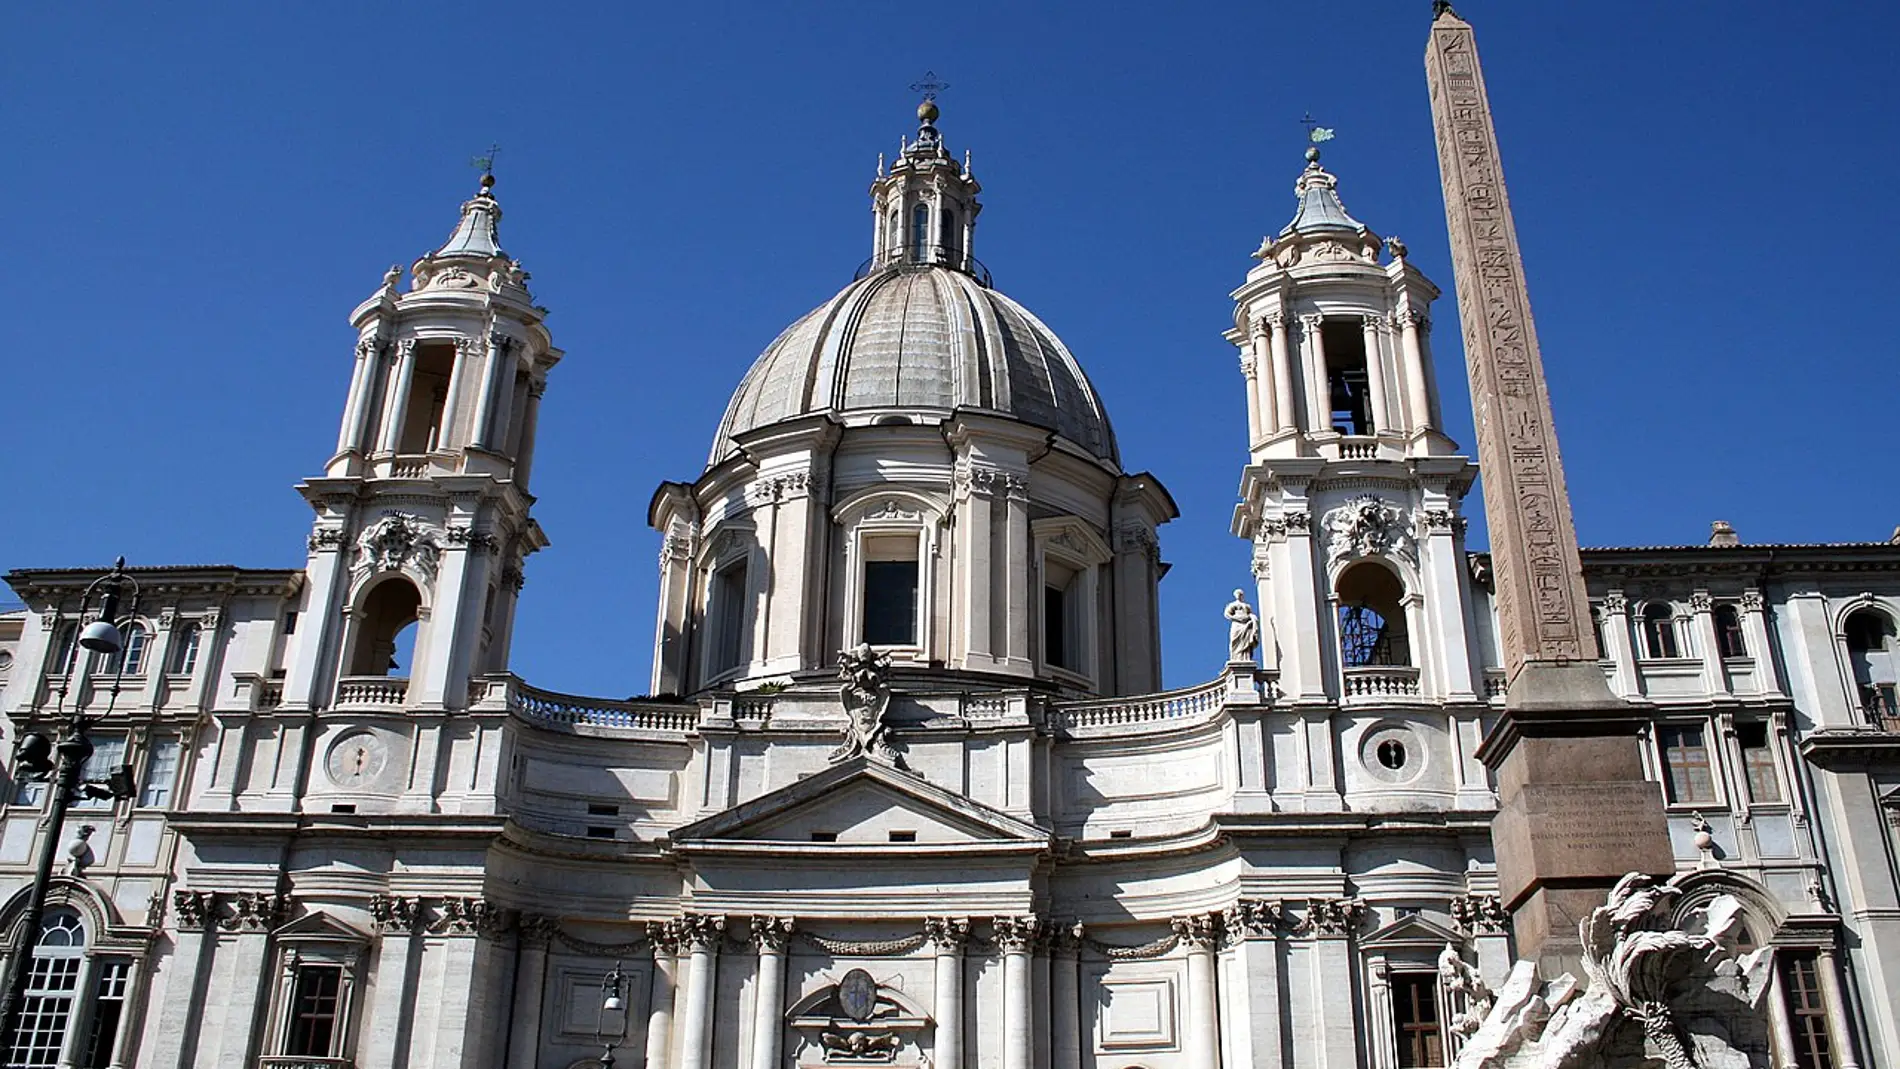 Iglesia Santa Inés en Agonía de Roma